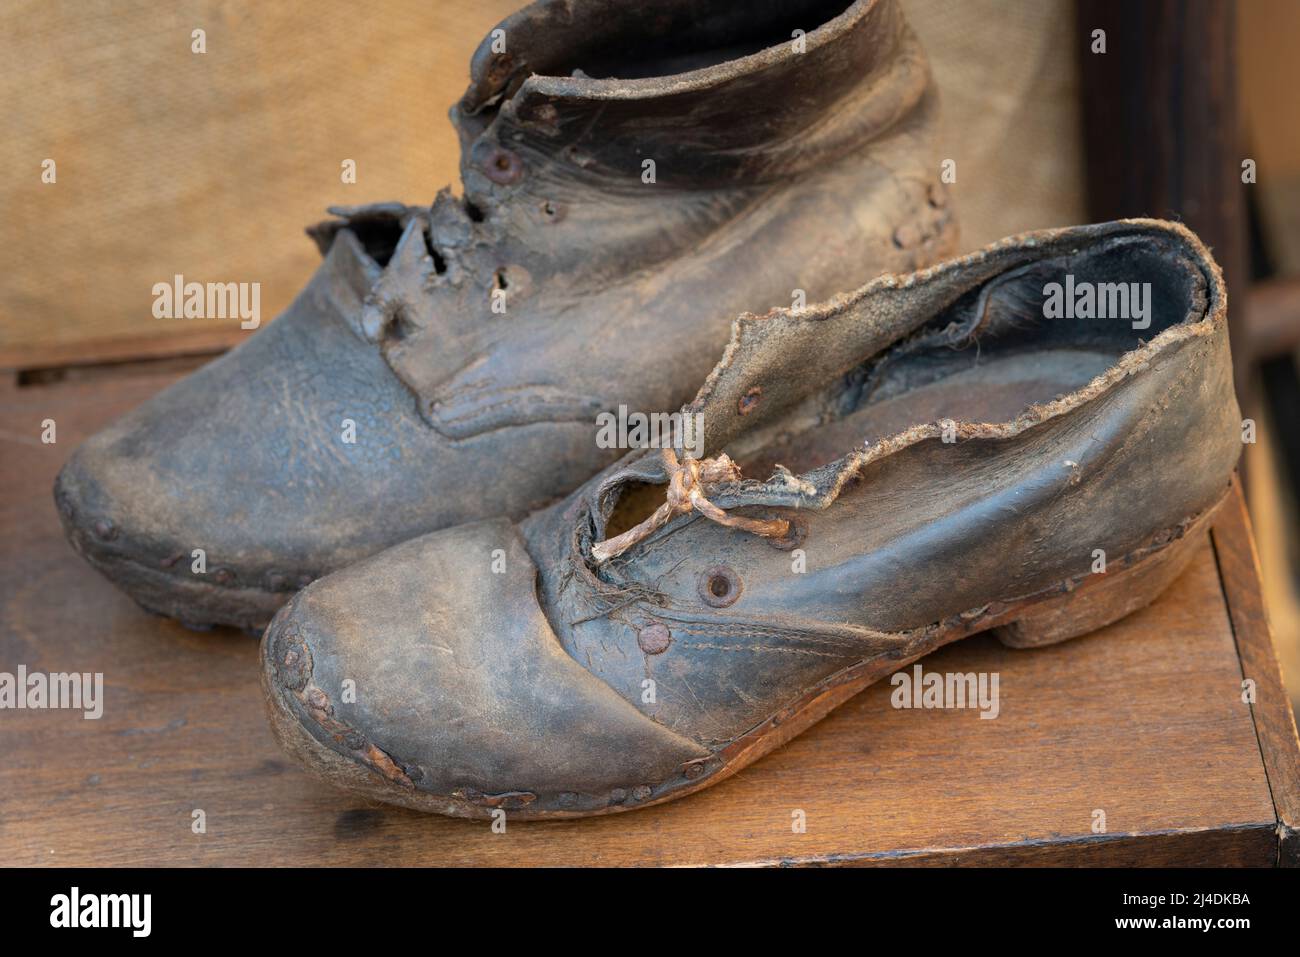 Italia, Lombardia, mercato delle pulci, scarpe in pelle vecchia rotta Foto Stock